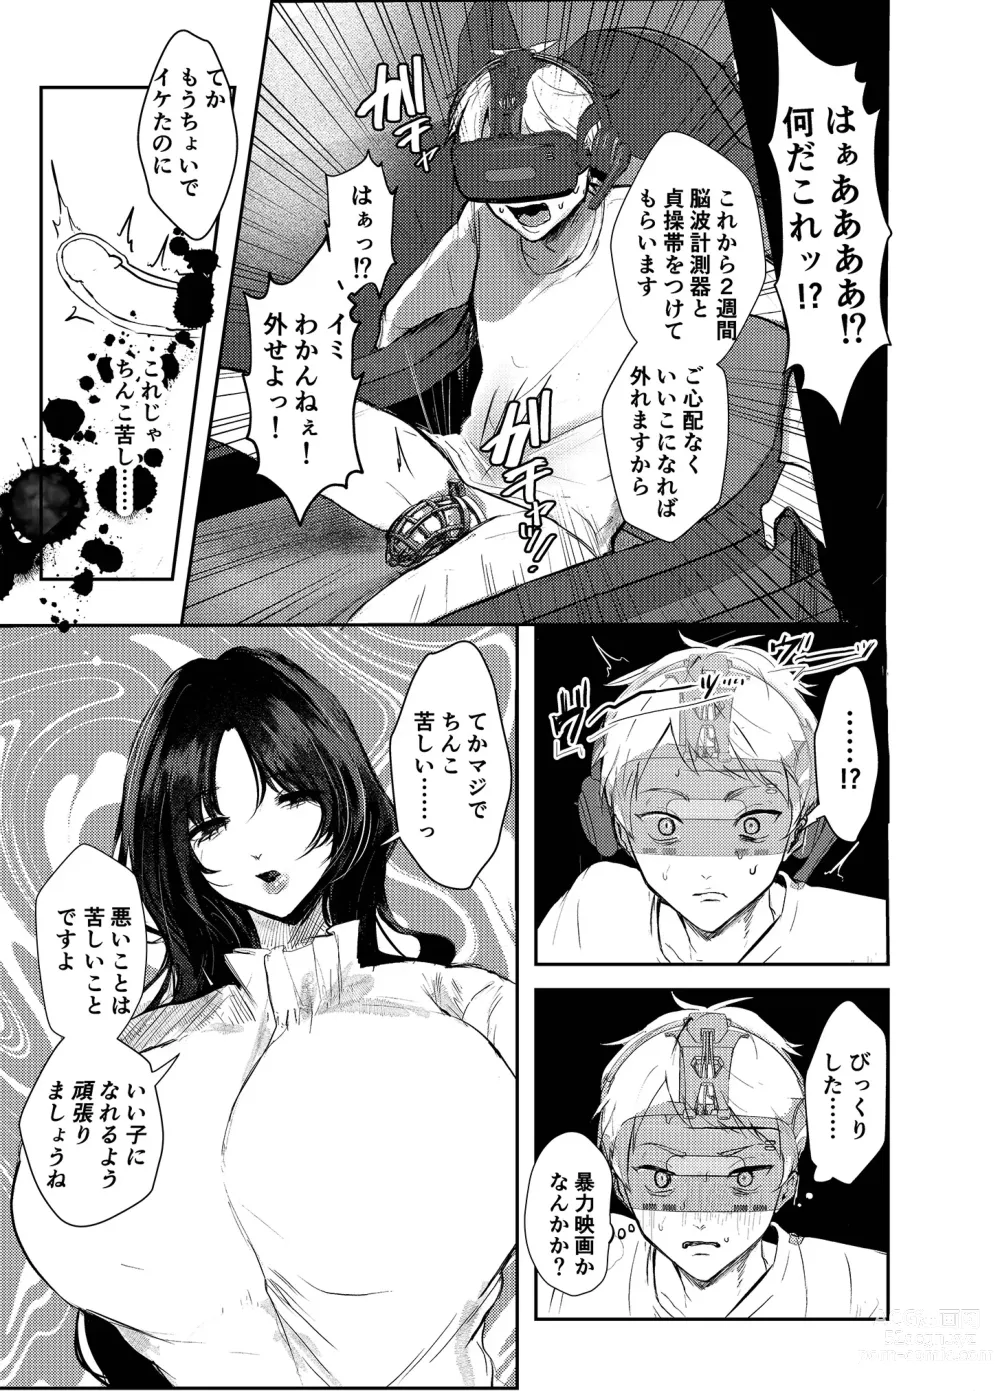 Page 11 of doujinshi Warui ko tettei kyouiku dekkai o neesan niiko ni kyousei sa reru hanashi